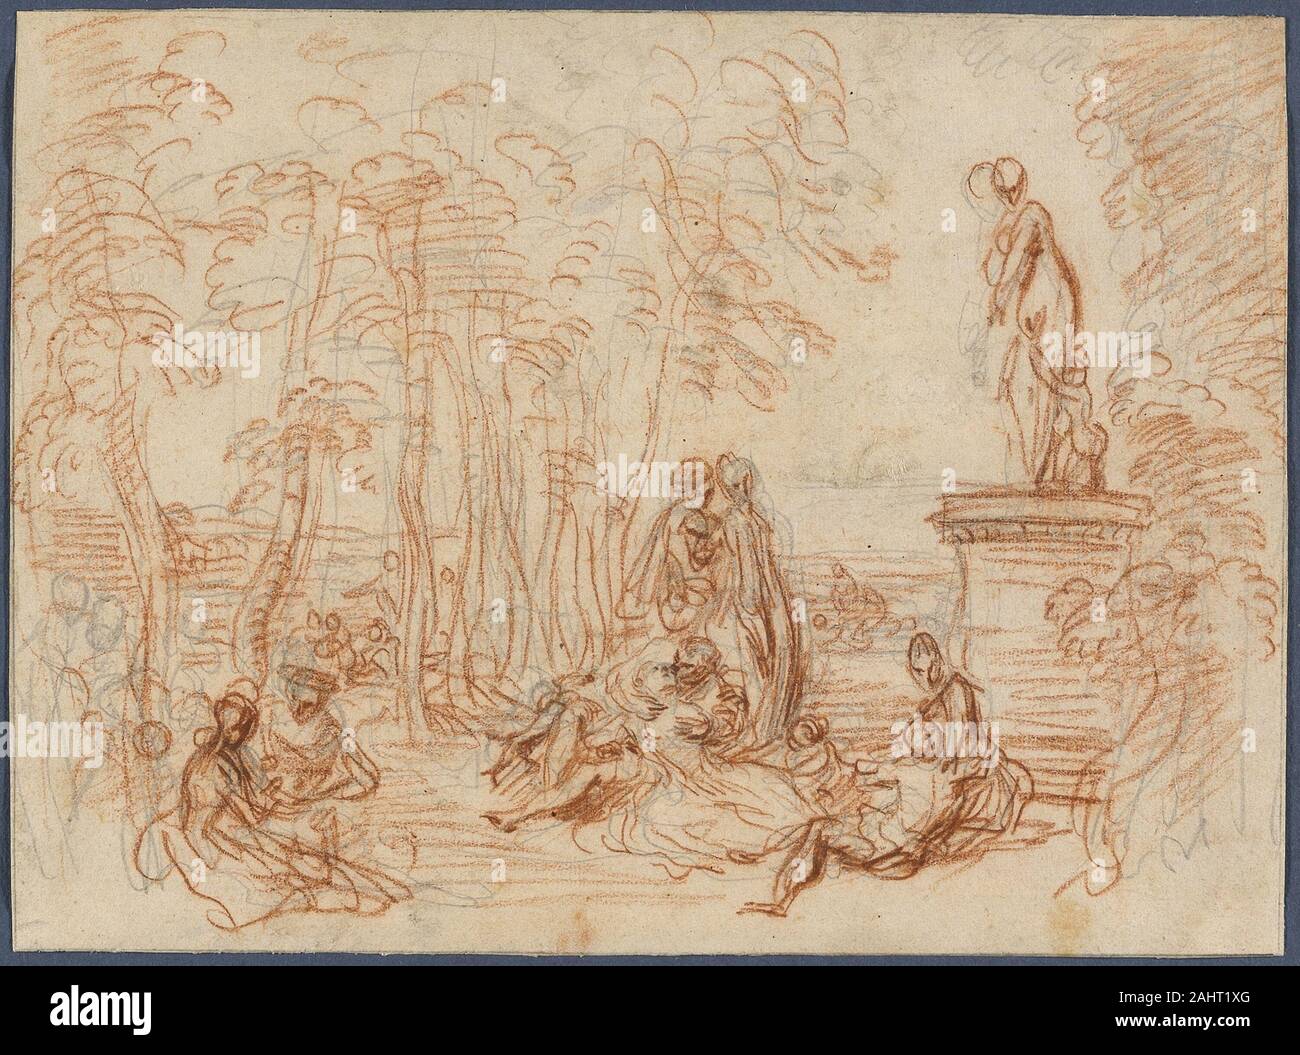 Jean Antoine Watteau. Étude pour la fête de l'amour. 1717-1718. La France. Craie rouge et graphite sur papier vergé chamois Banque D'Images